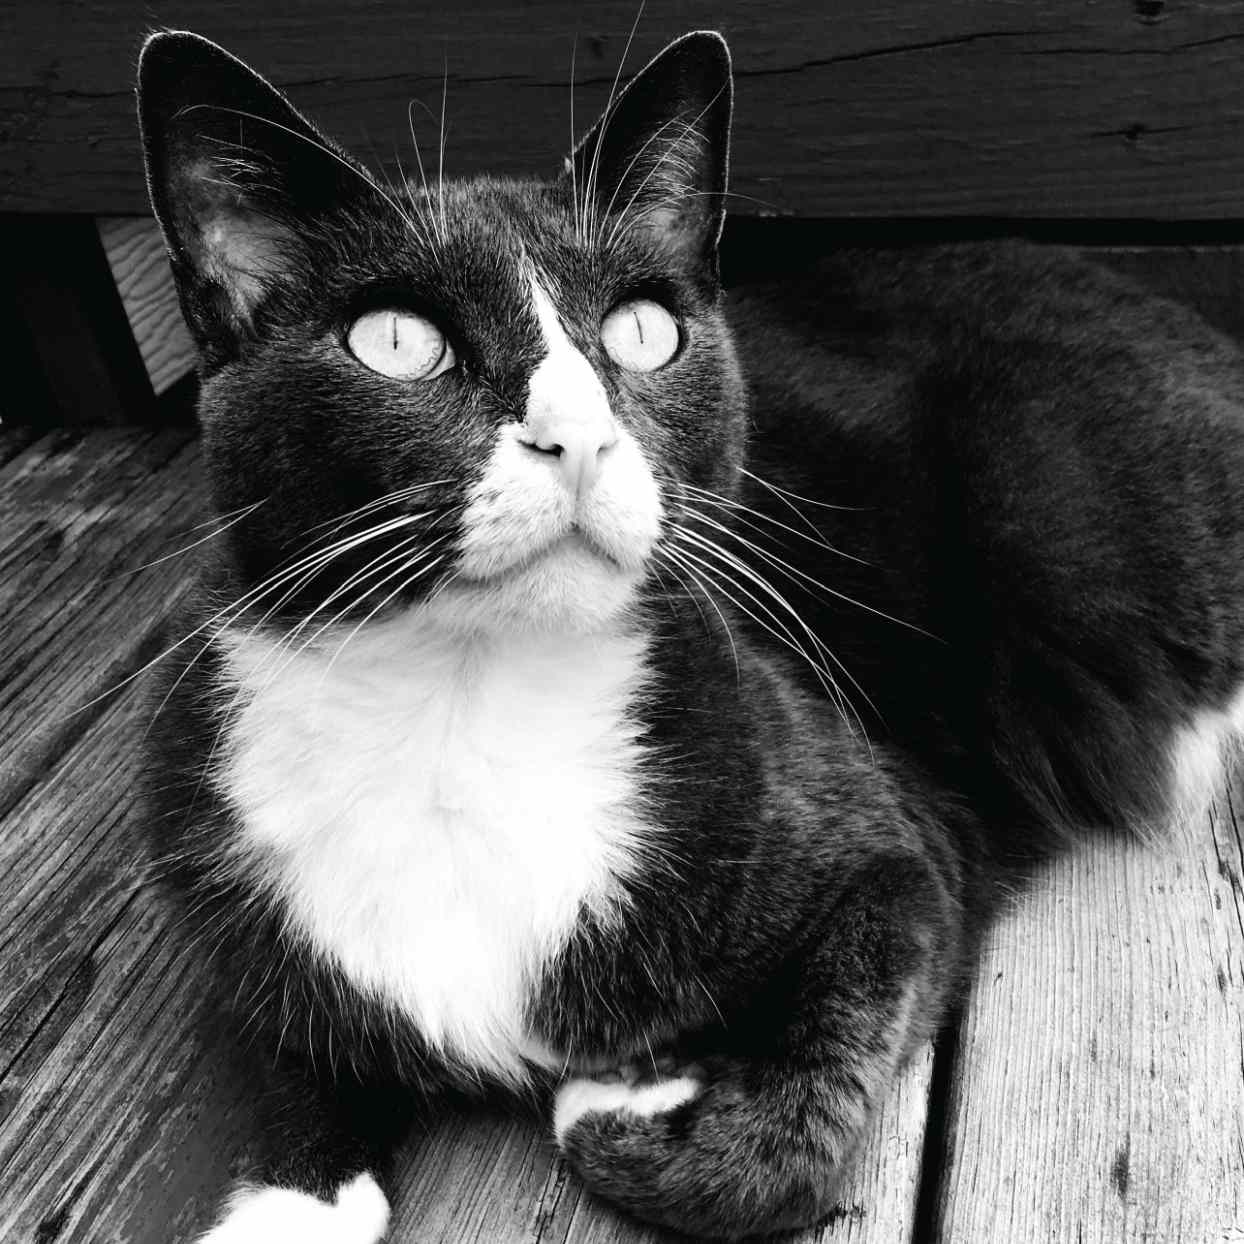 Mr. Pip the tuxedo cat